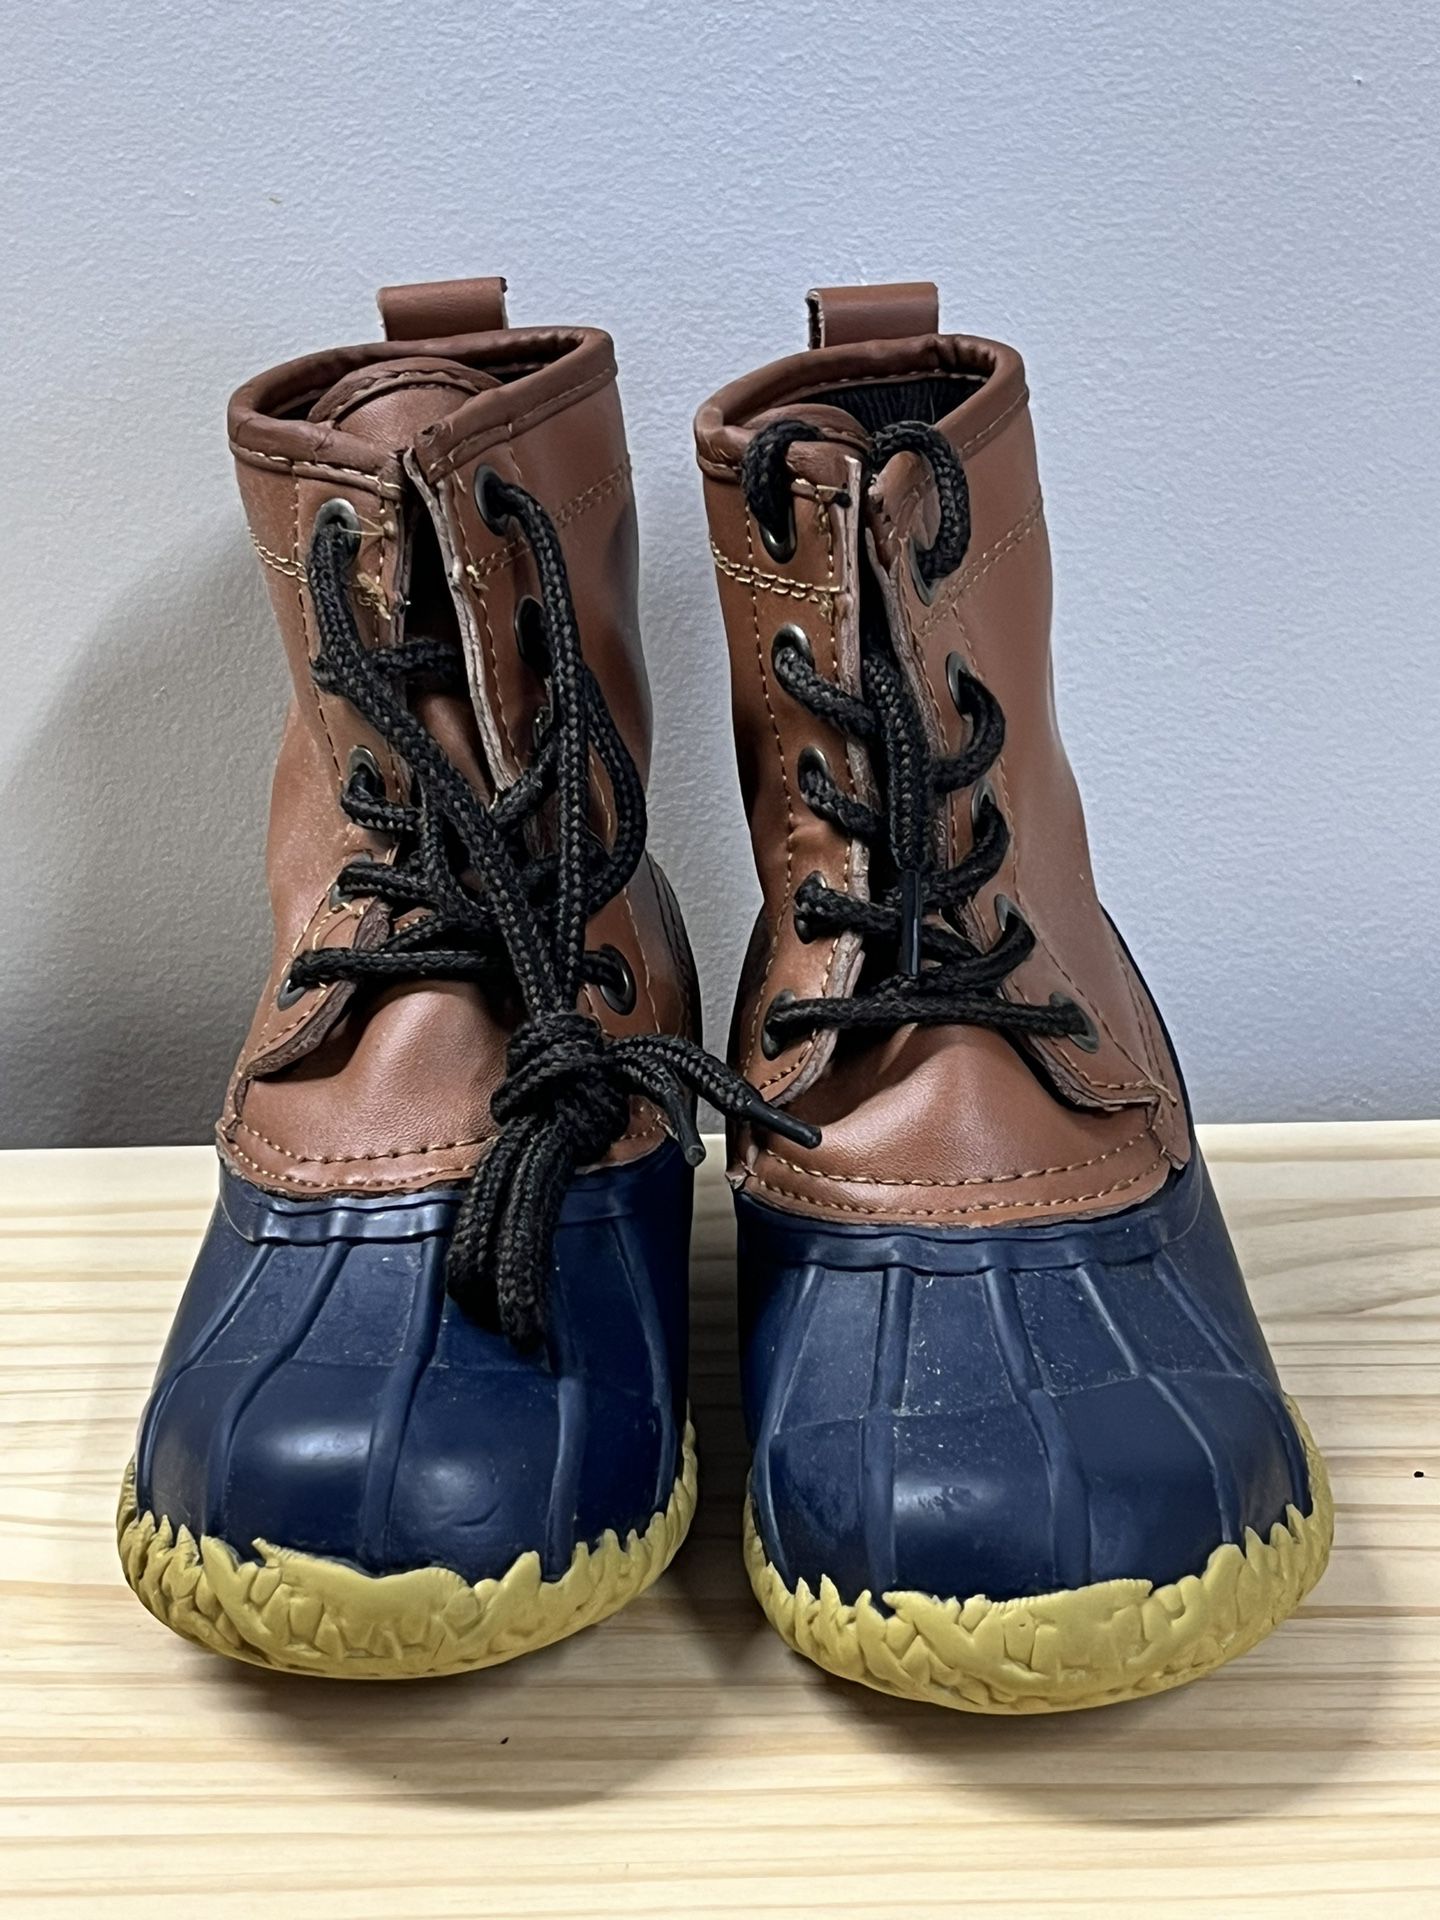 Children’s Snow boots